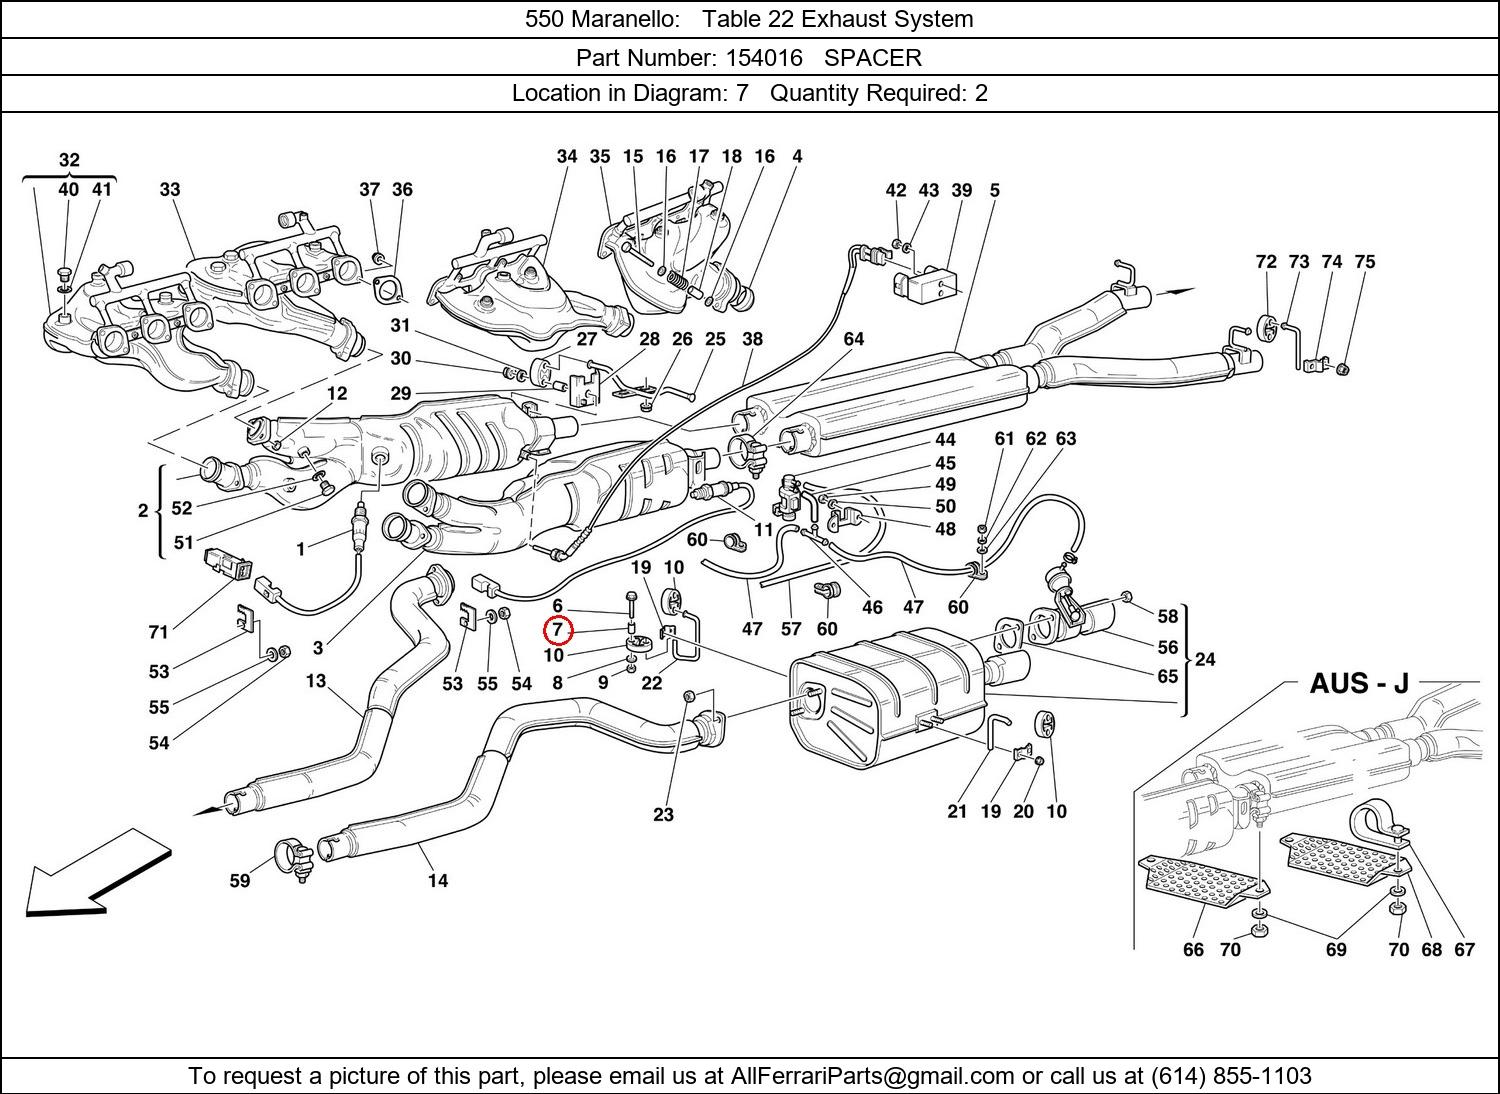 Ferrari Part 154016